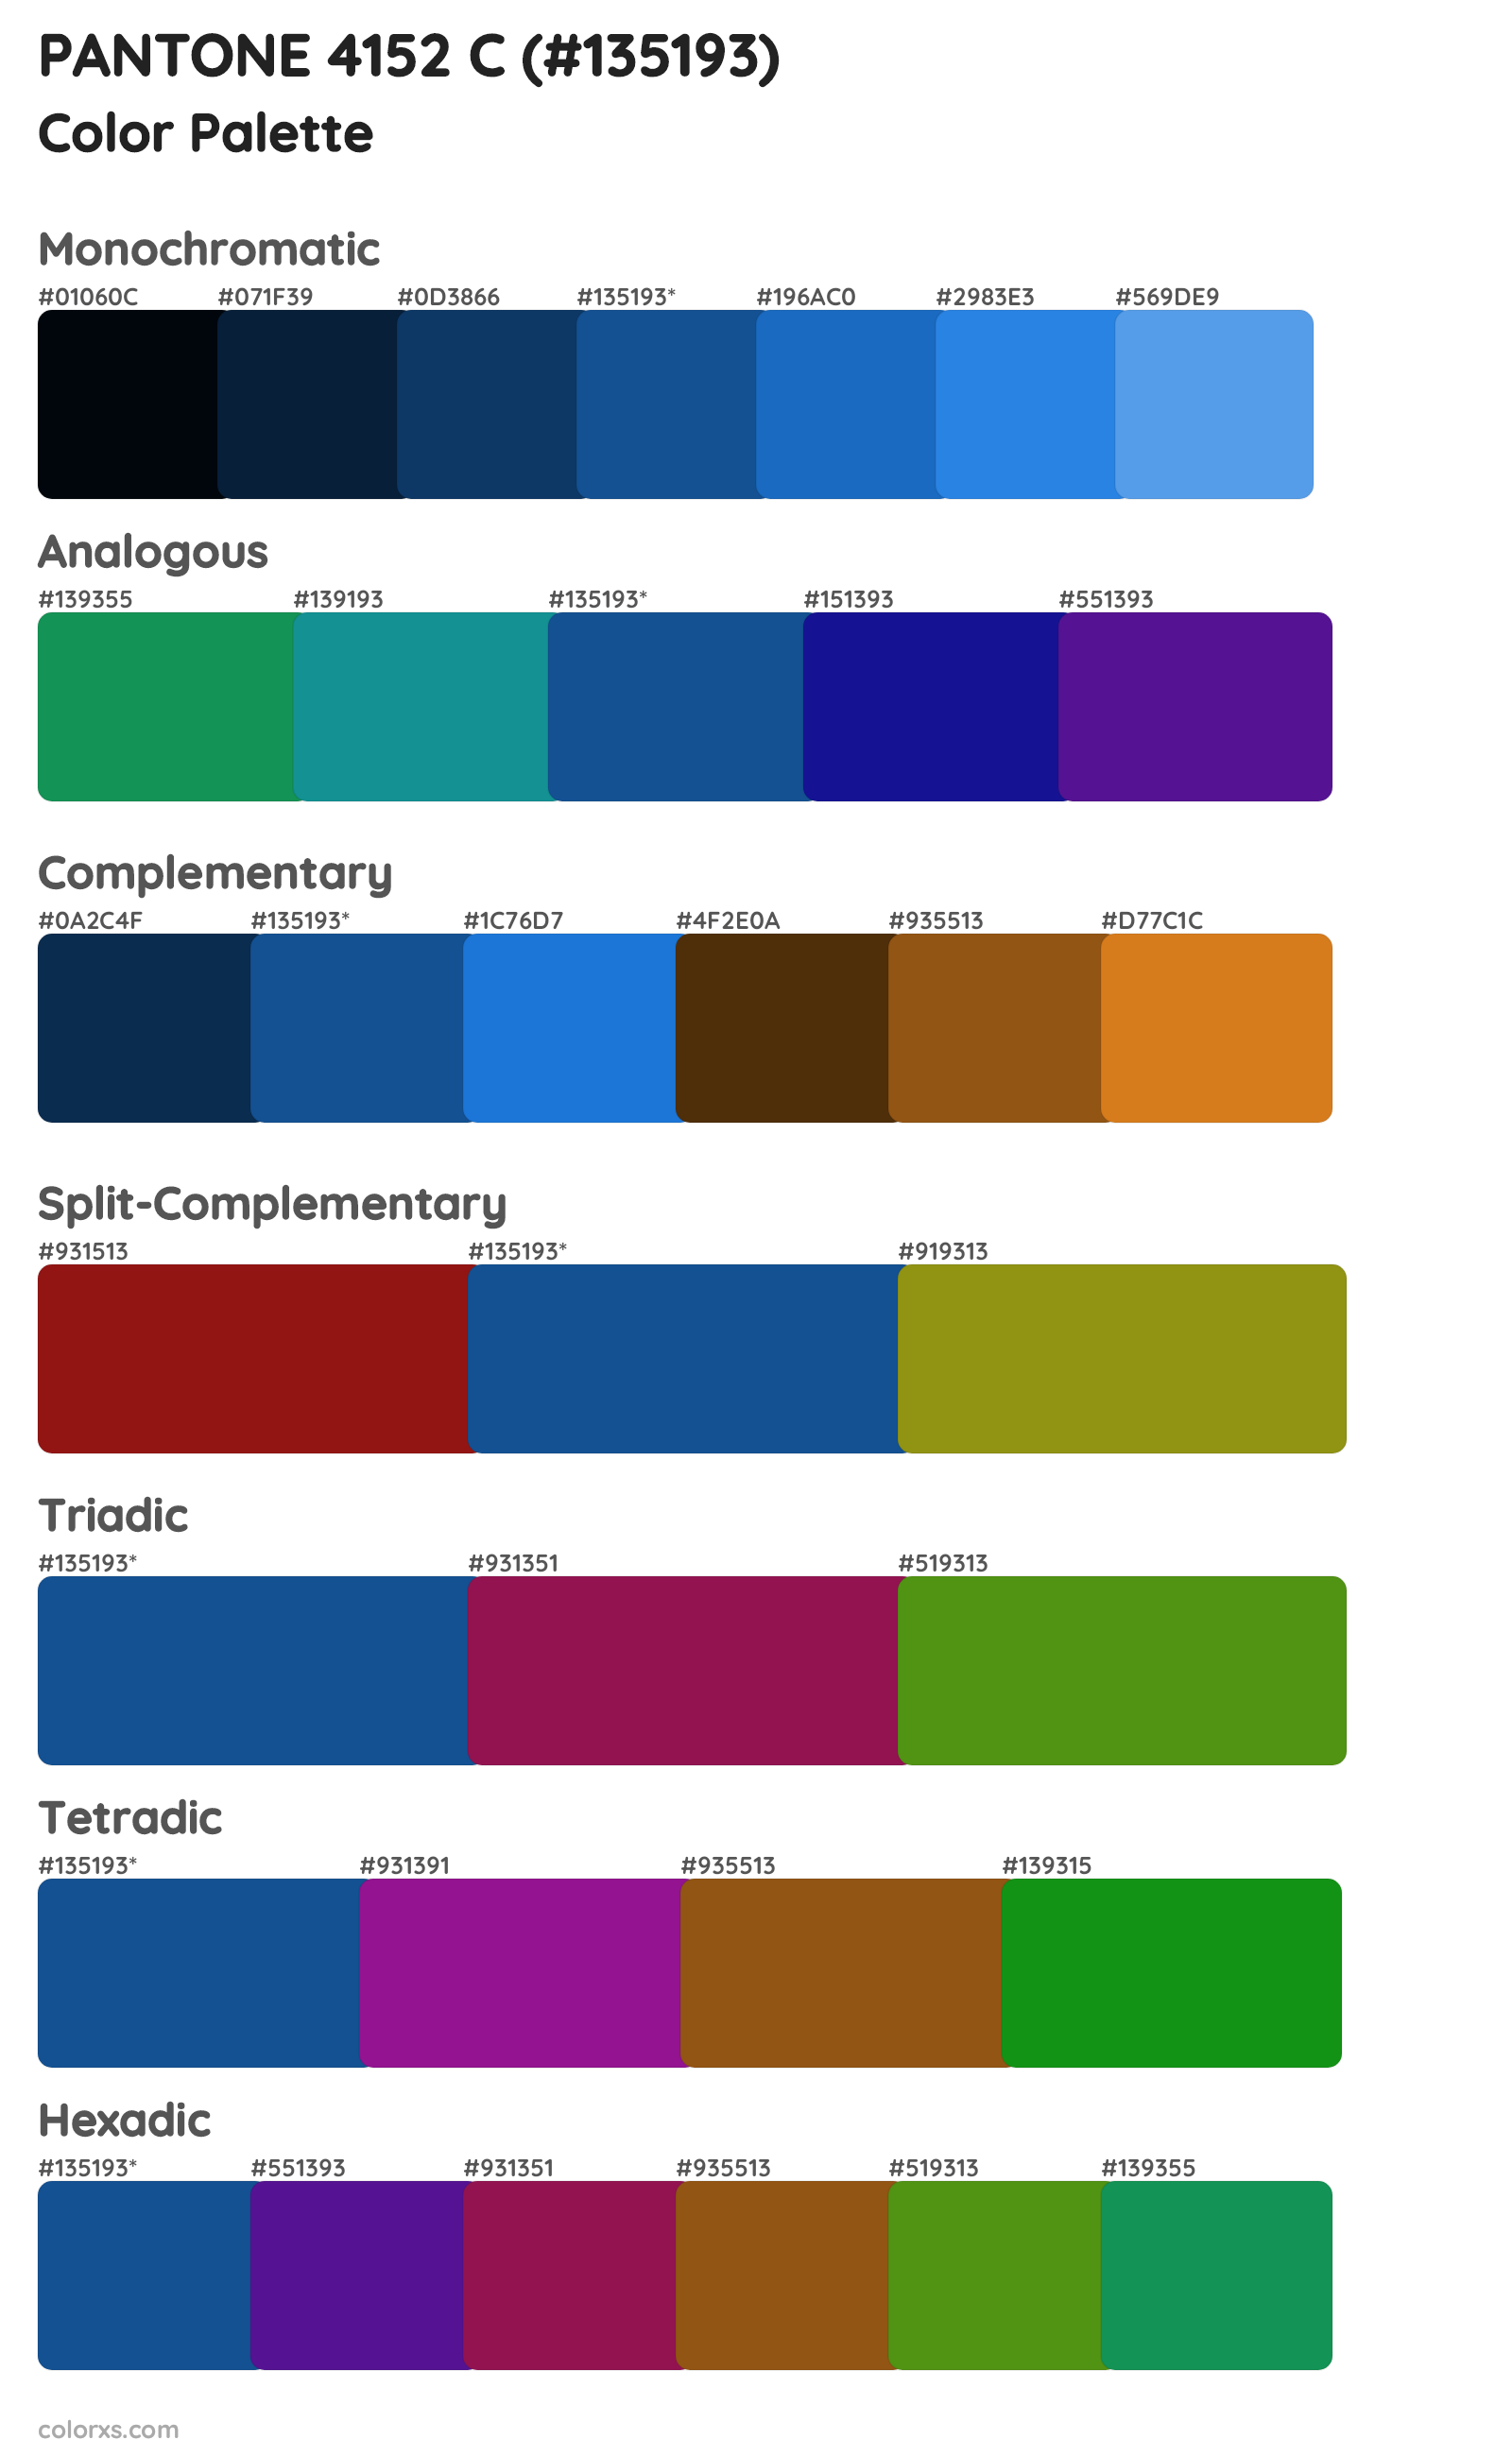 PANTONE 4152 C Color Scheme Palettes